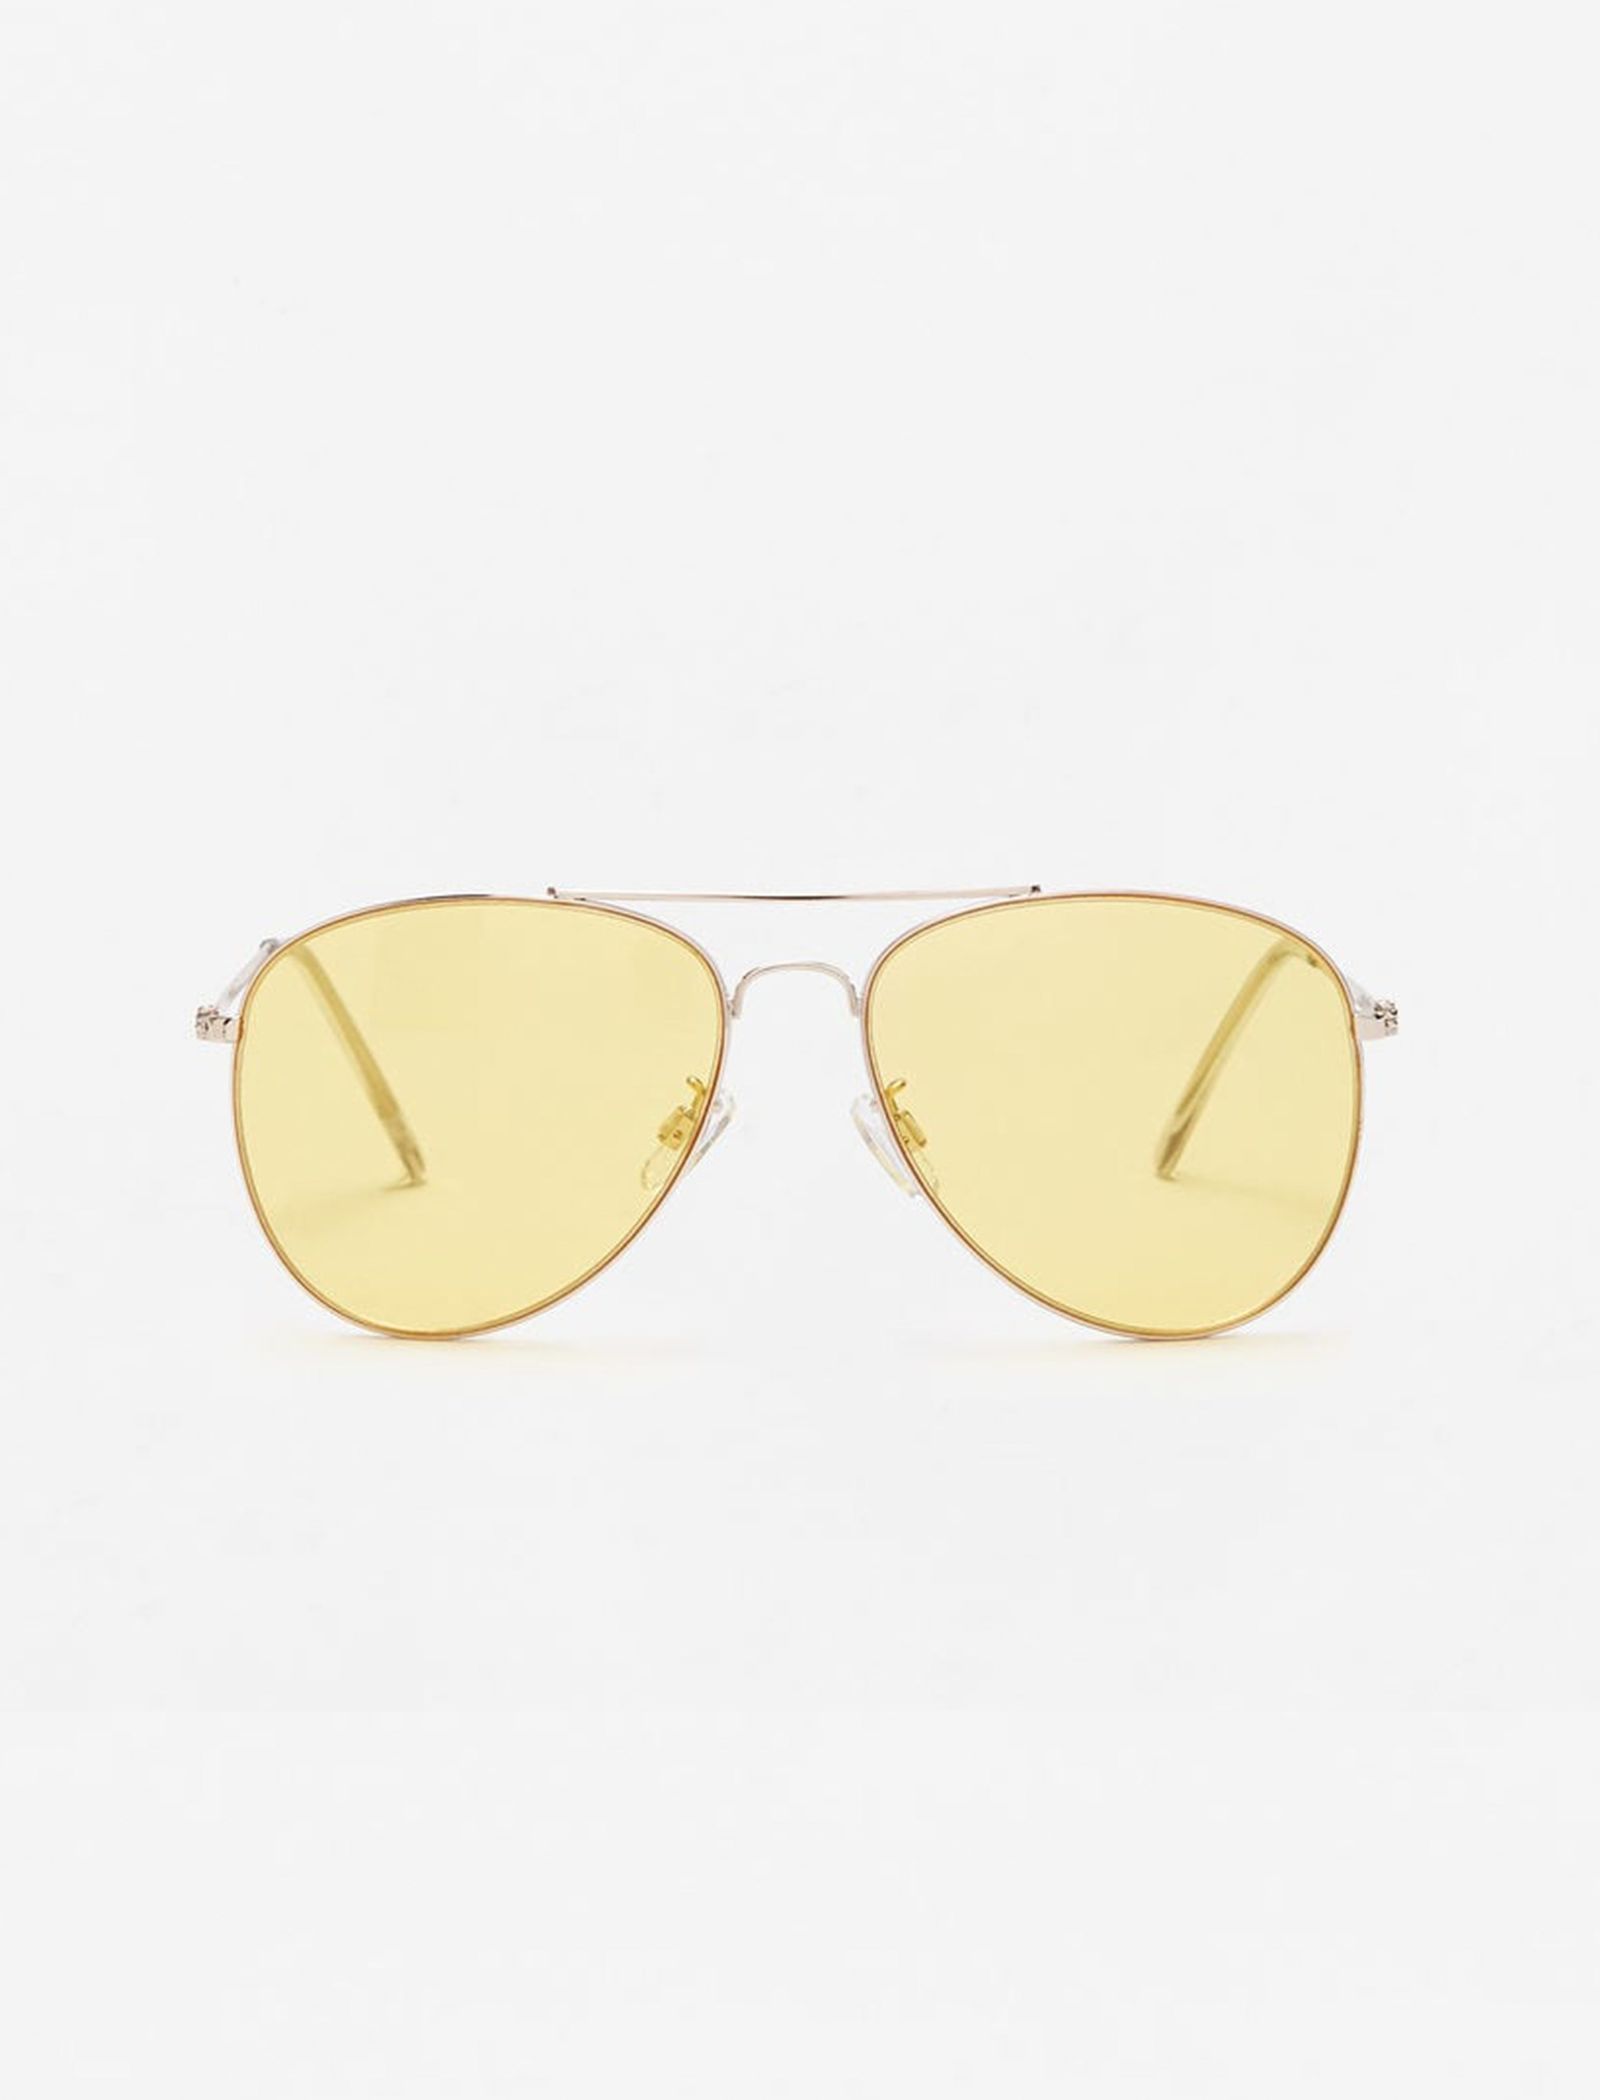 عینک آفتابی خلبانی زنانه - مانگو - طلايي - 2